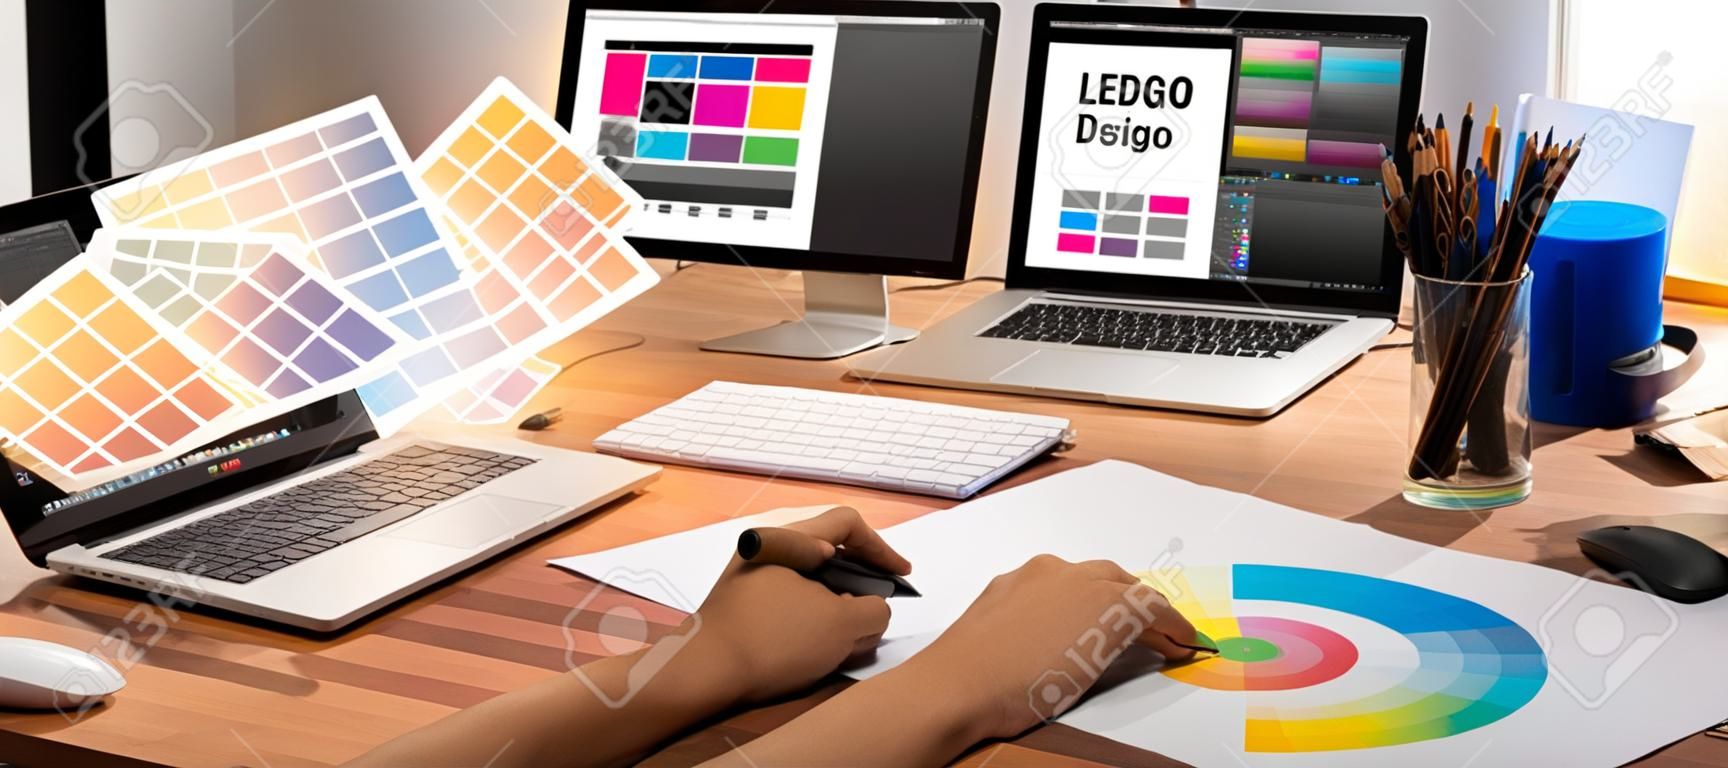 그래픽 디자이너는 컴퓨터 노트북과 그래픽 그리기 펜을 사용하여 현대 디지털 스튜디오 작업장 파노라마 샷에서 전문 그래픽 팀과 함께 고유한 디자인을 브레인스토밍하면서 작업합니다.